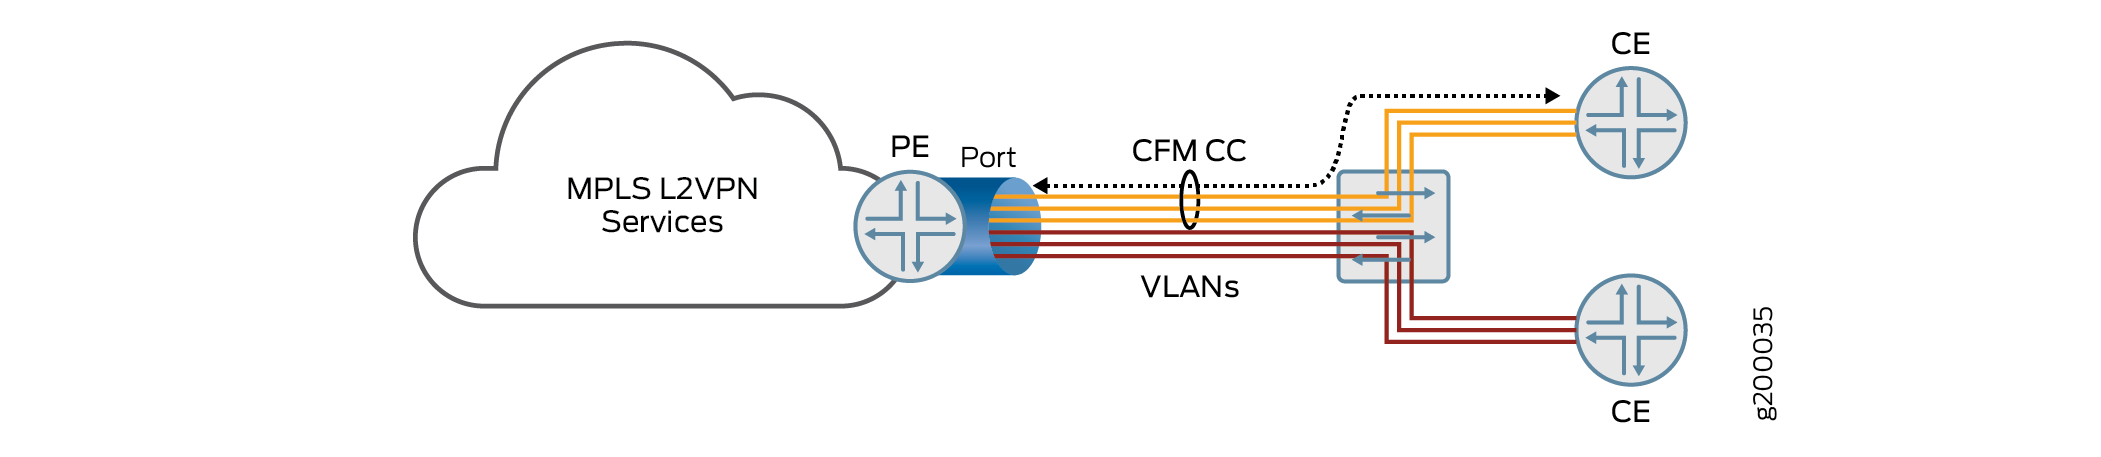 Topología de varios servicios de VLAN que comparten un solo puerto en un enrutador de PE destinado a varios enrutadores CE